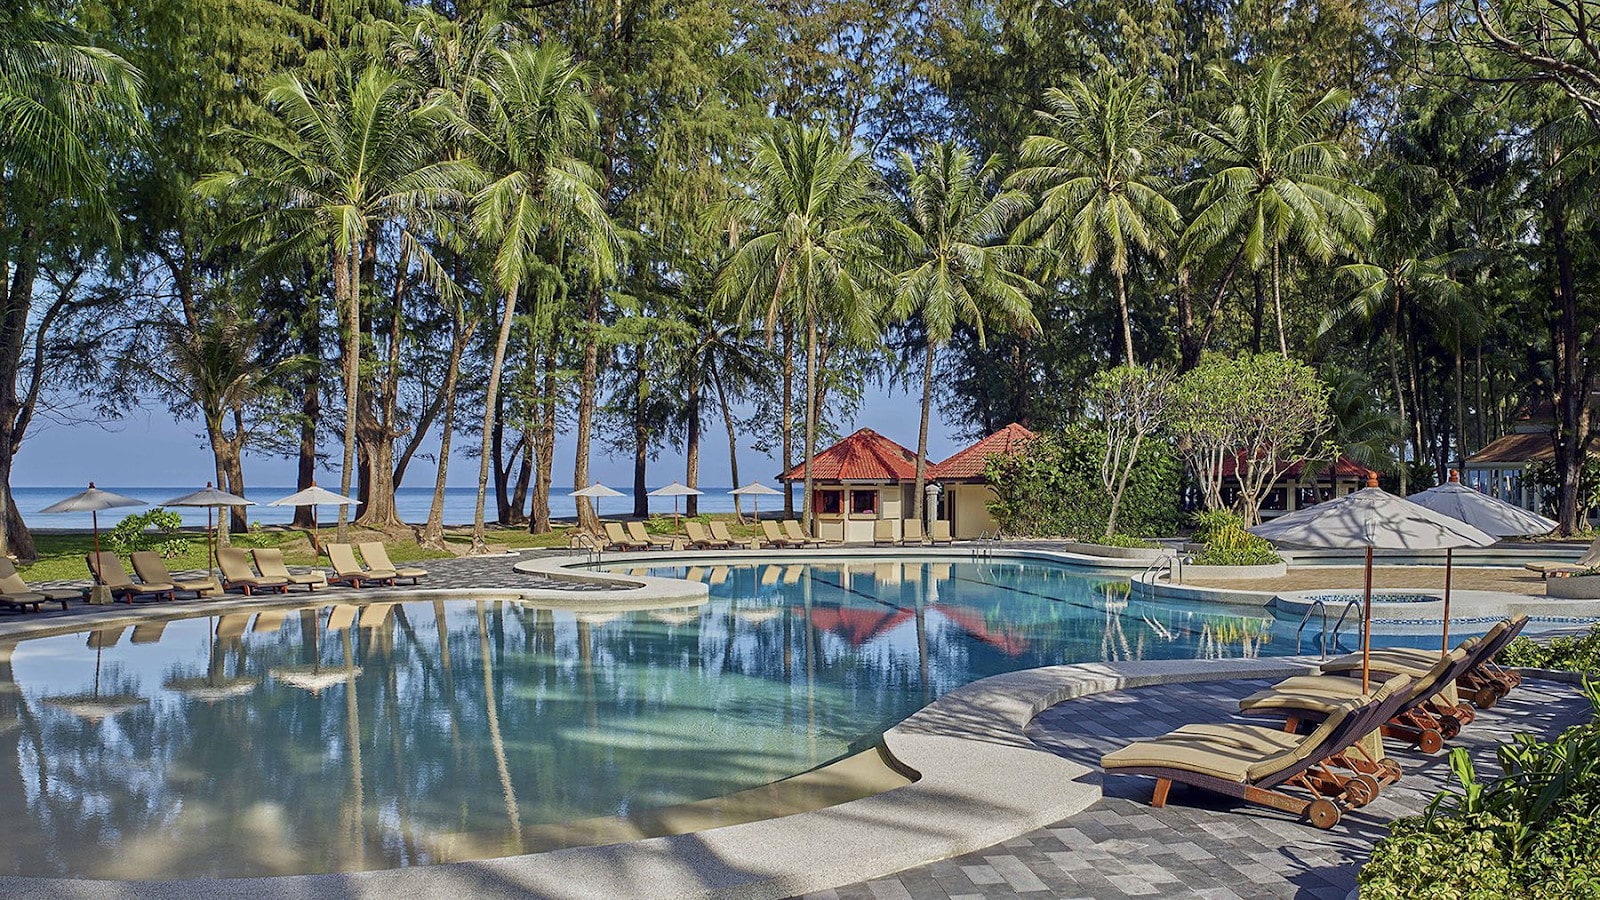 The Dusit Thani Laguna Beach Resort in Phuket